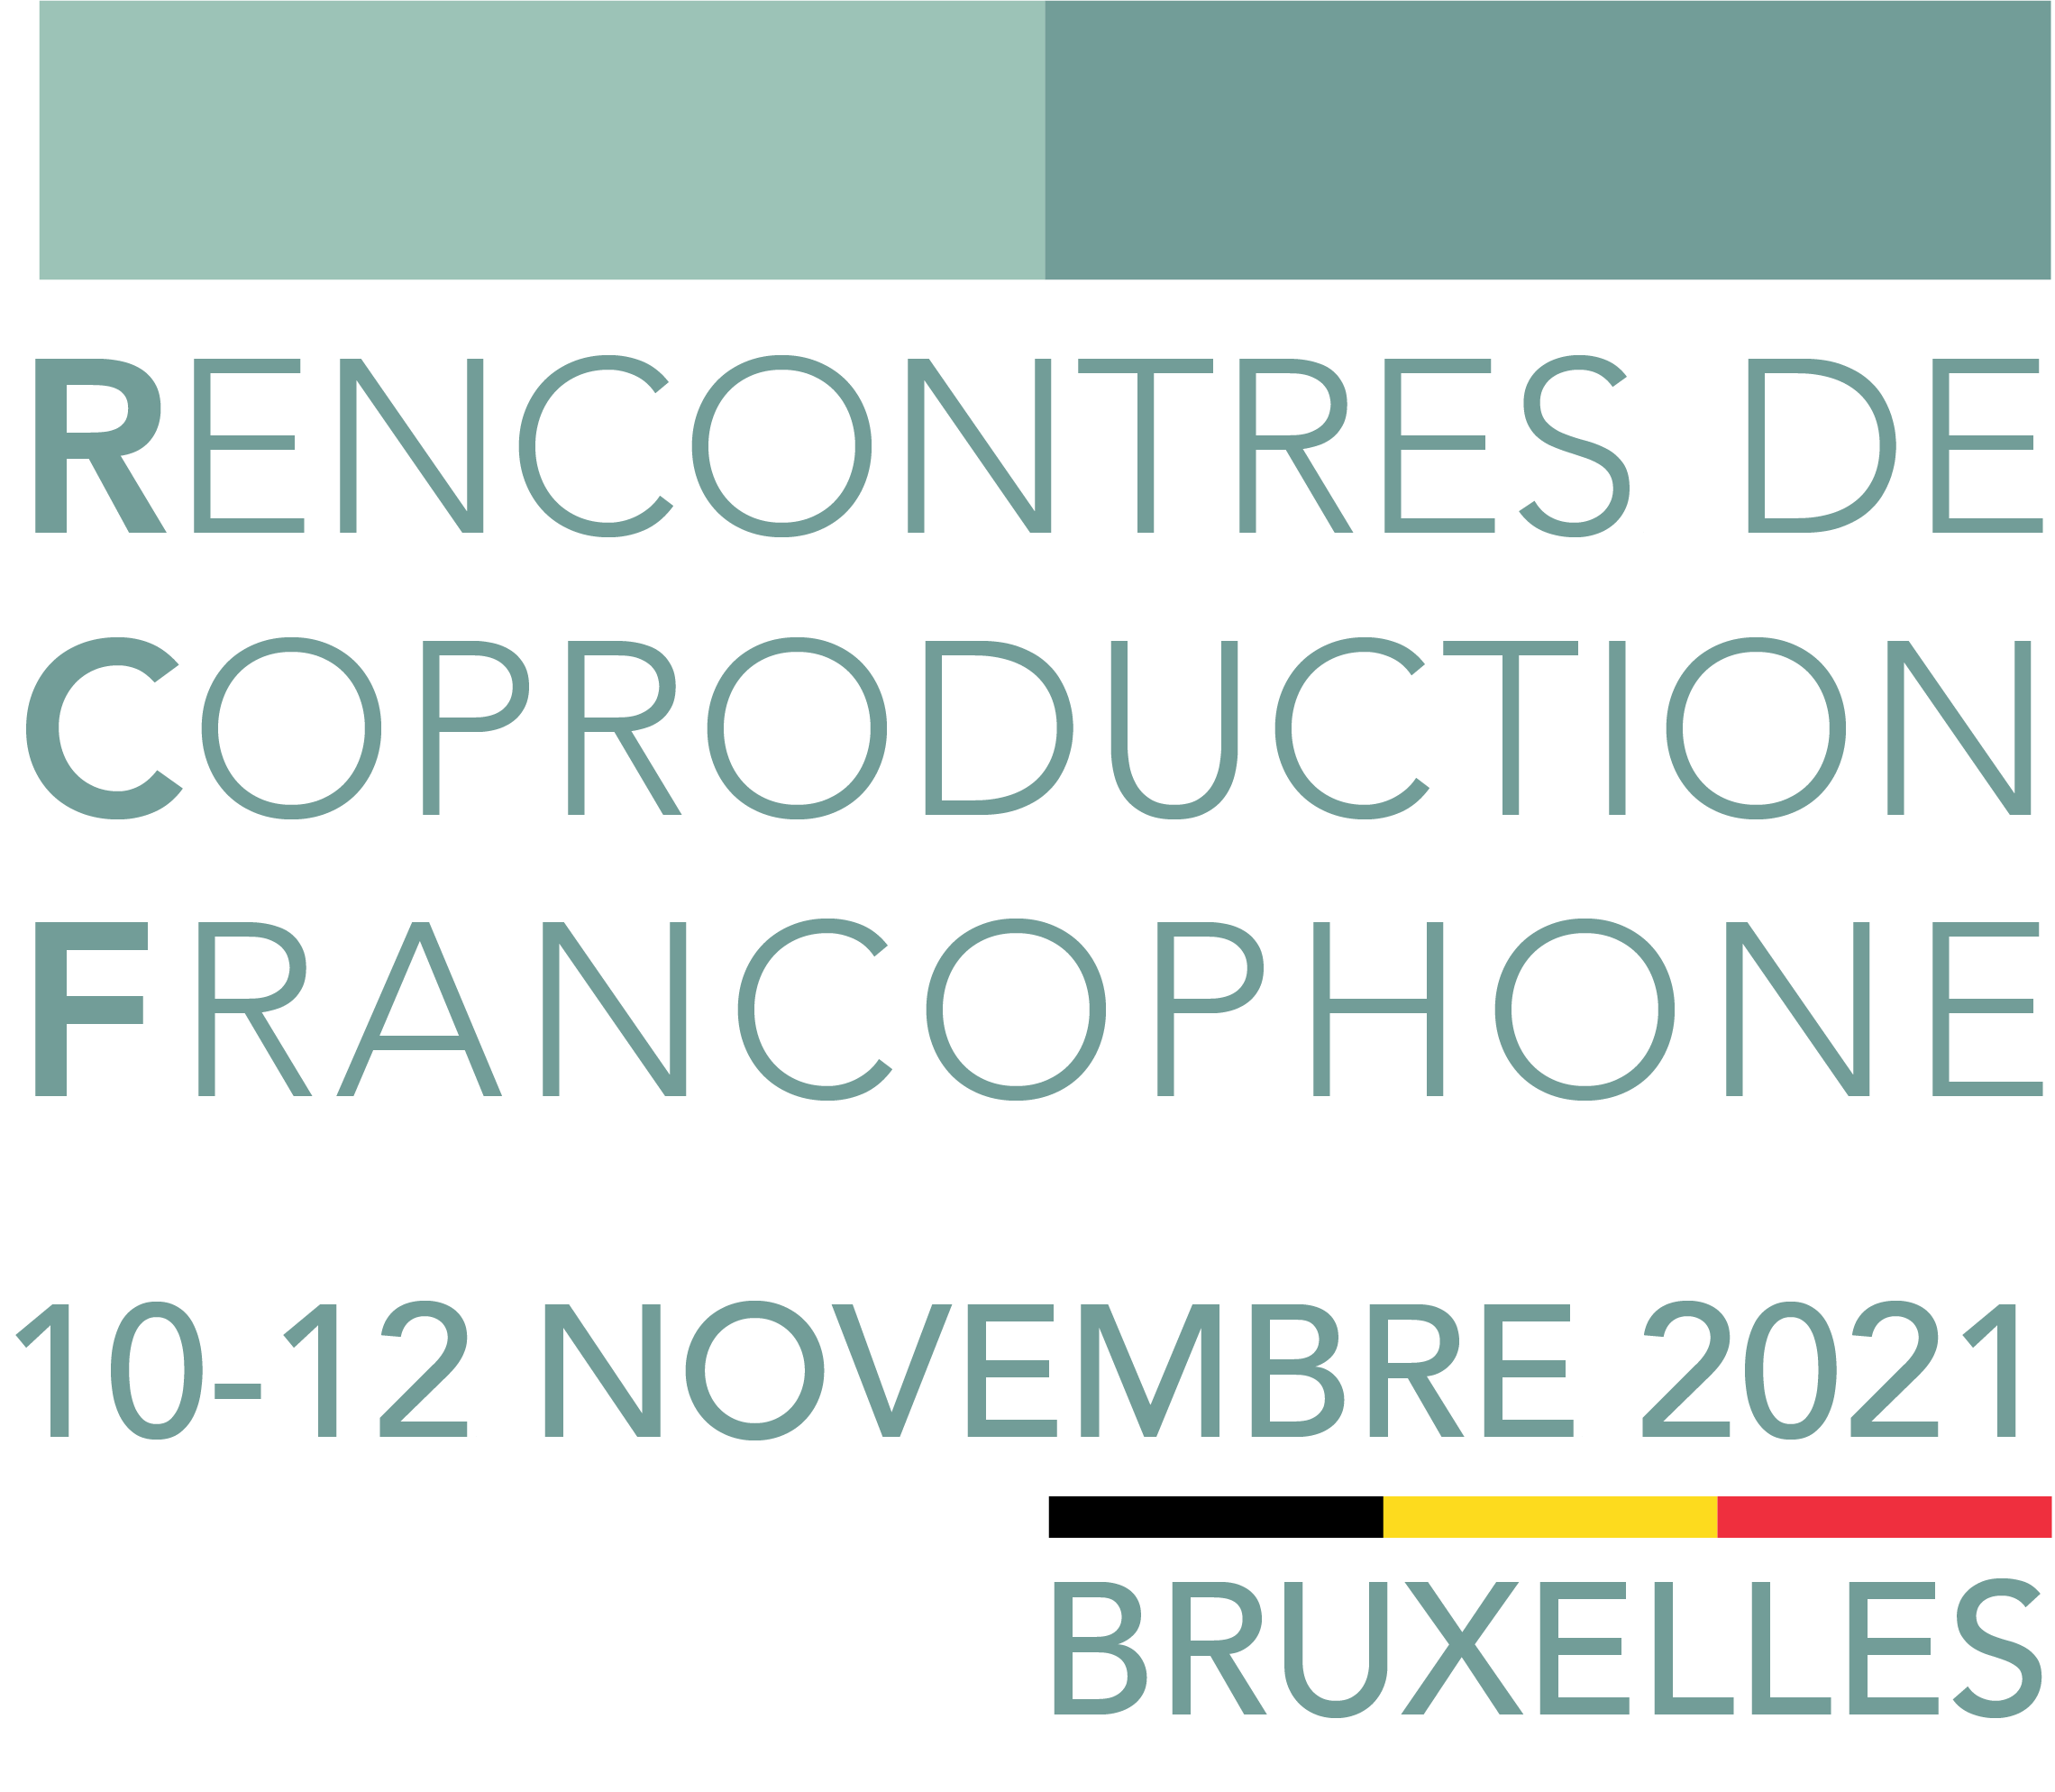 RENCONTRES DE COPRODUCTION FRANCOPHONE